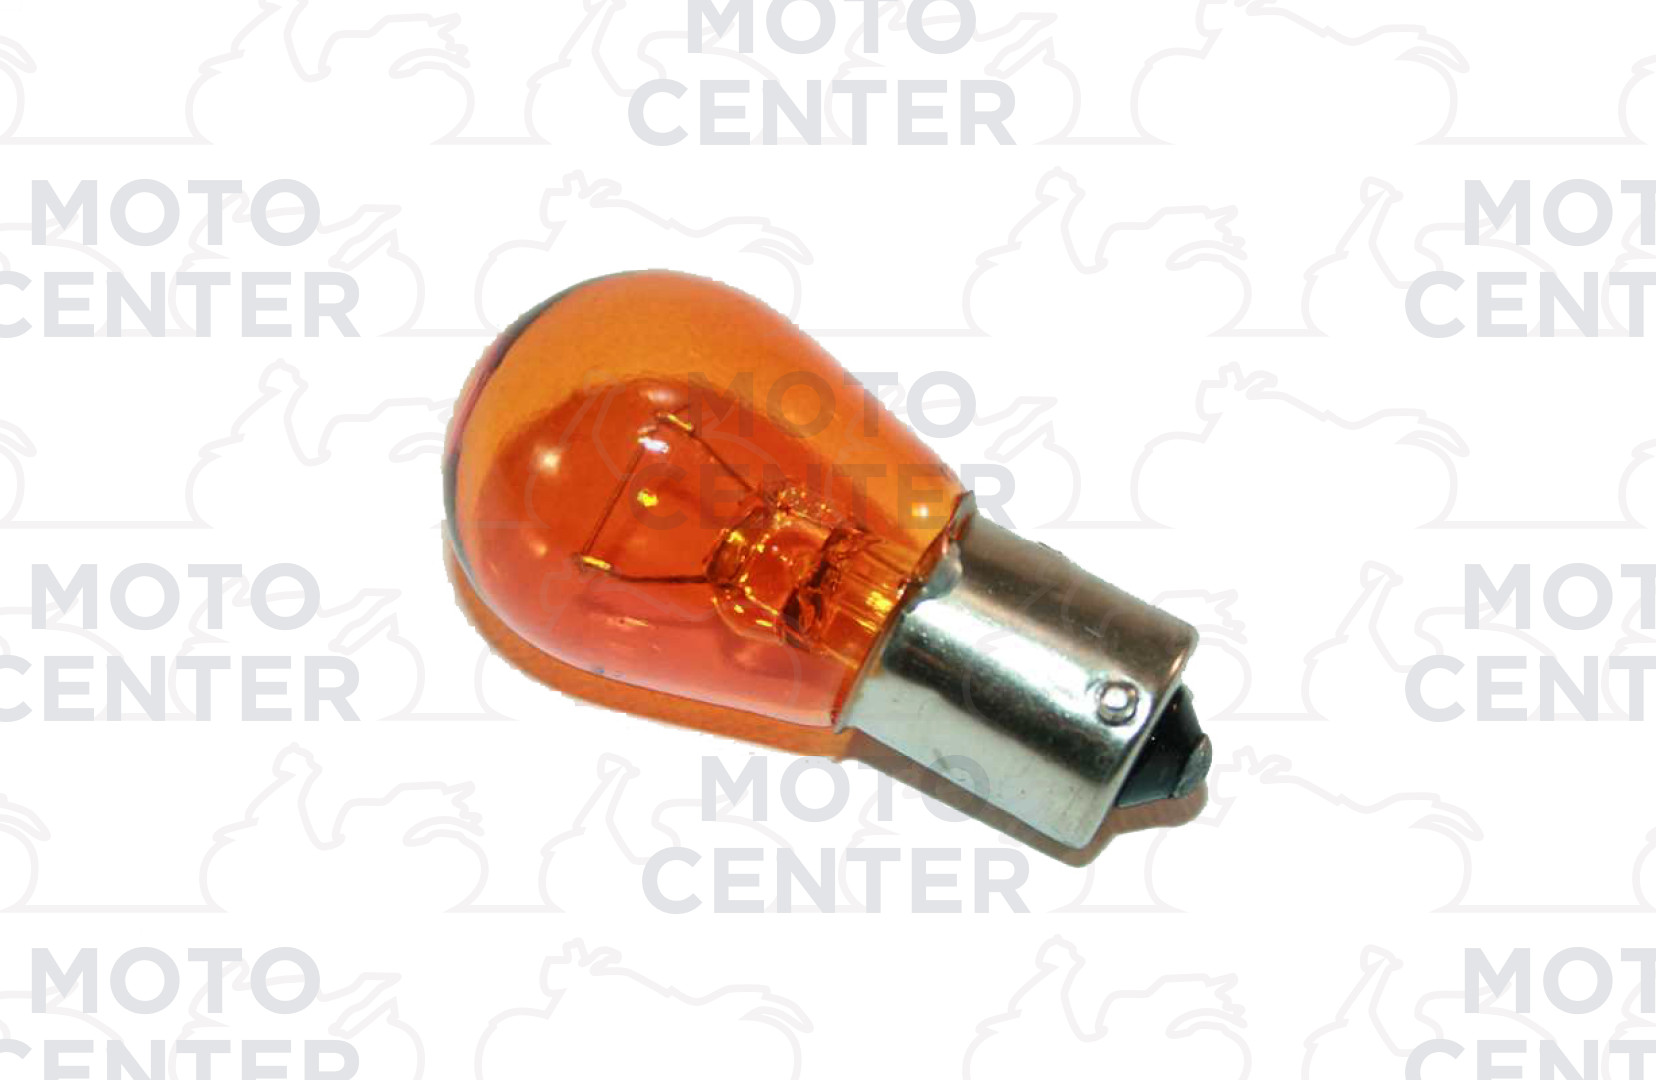 Kugellampe 12V 10W orange gelb kleine Kugel Glühlampe Modelle